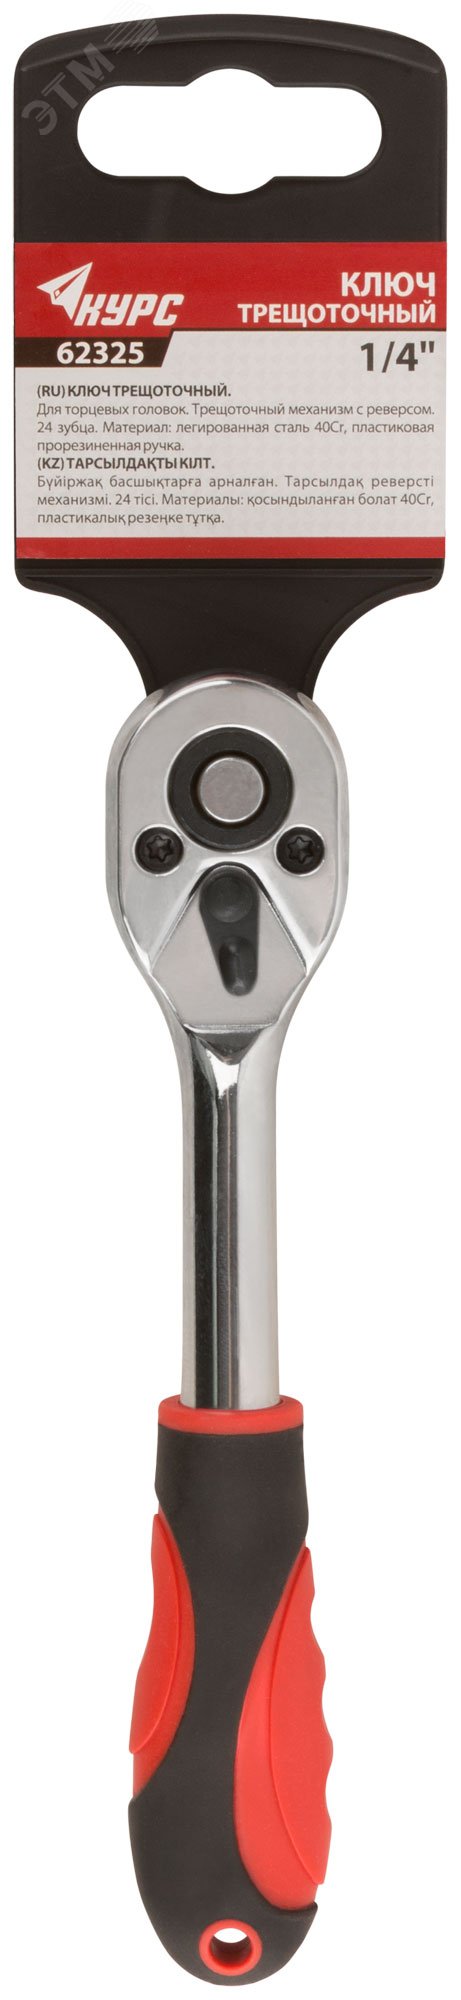 Вороток (трещотка), механизм легированная сталь 40Cr, пластиковая прорезиненная ручка, 1/4'', 24 зубца 62325 КУРС - превью 3